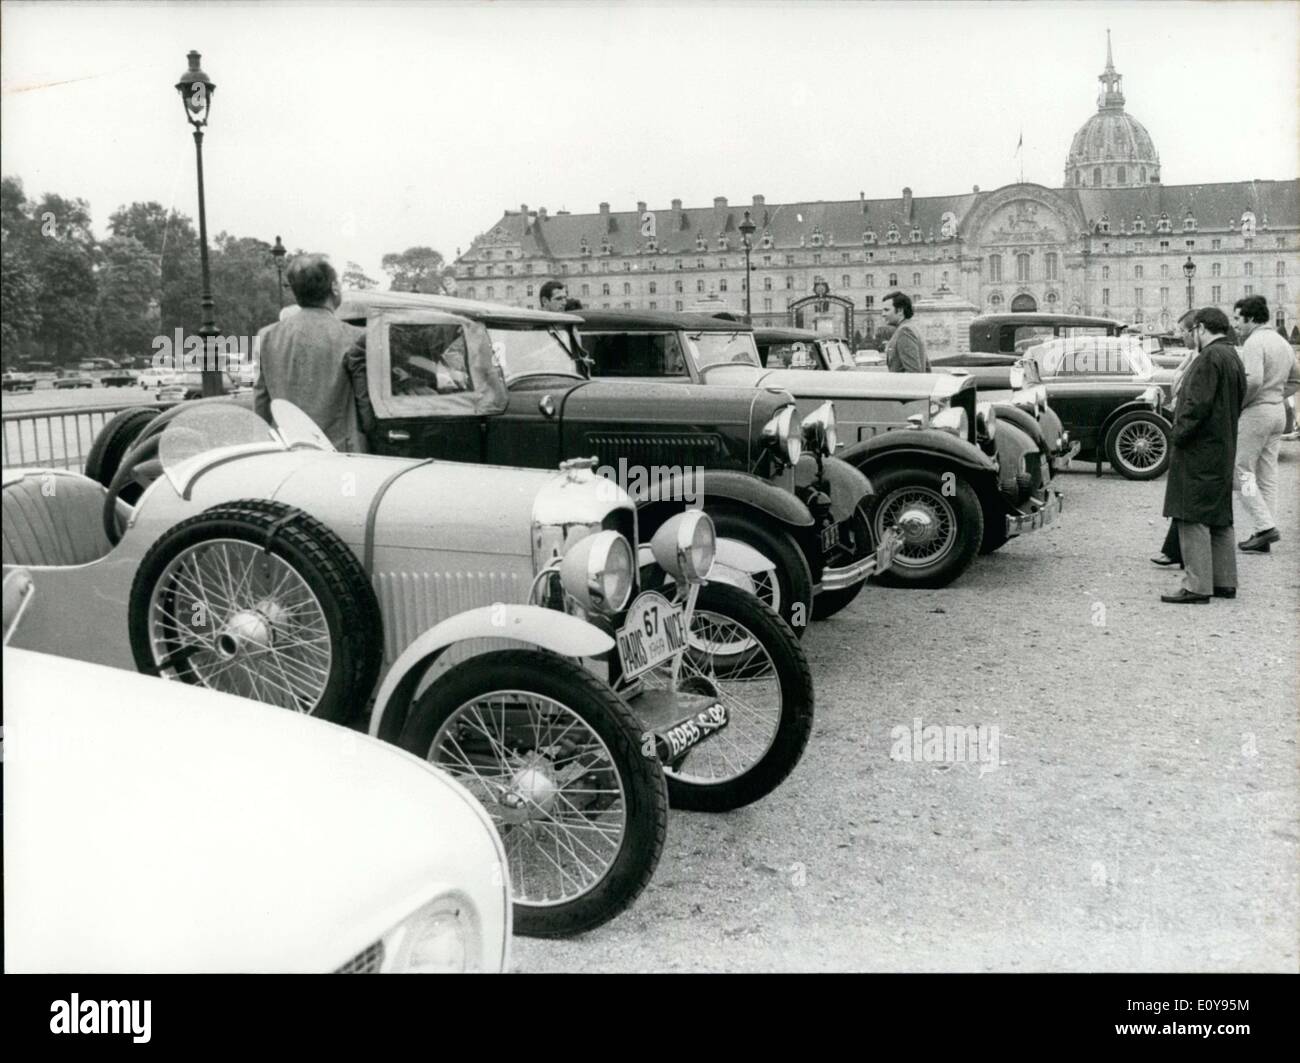 14 maggio 1969 - Domani 100 vecchie automobili con marche prestigiose lascerà Parigi per Nizza: Bugattis, Rolls-Royce, Talbots, Delages. Prima del Gran Premio di Monaco, le vetture dovranno andare intorno alla pista. La gara è stata organizzata dall'automobile club. Foto Stock